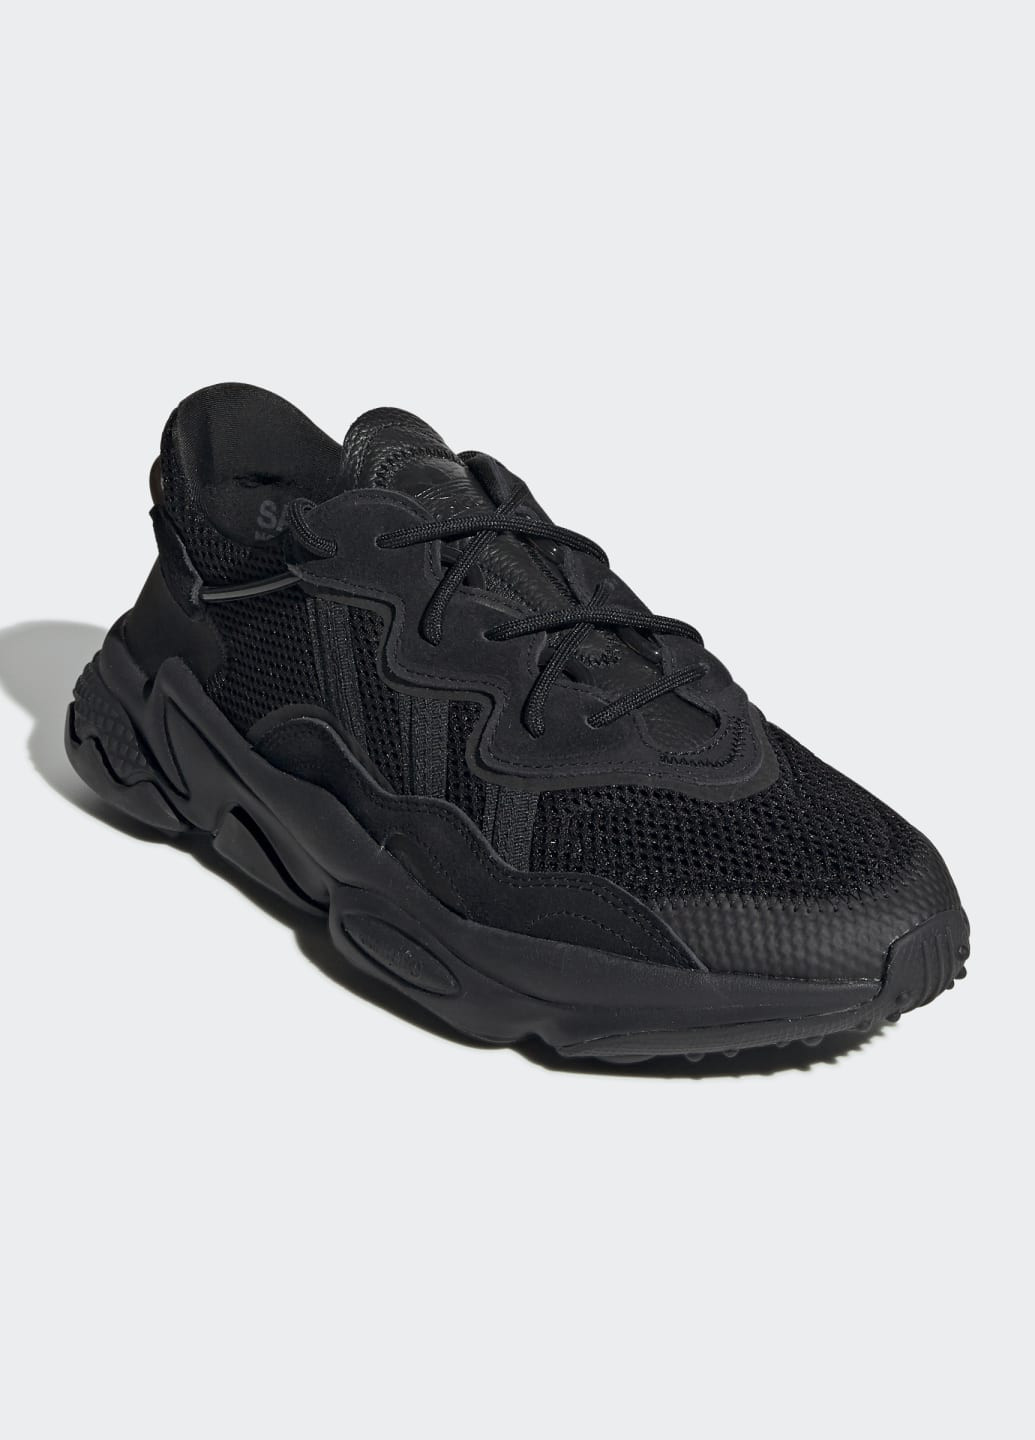 Черные всесезонные кроссовки ozweego adidas